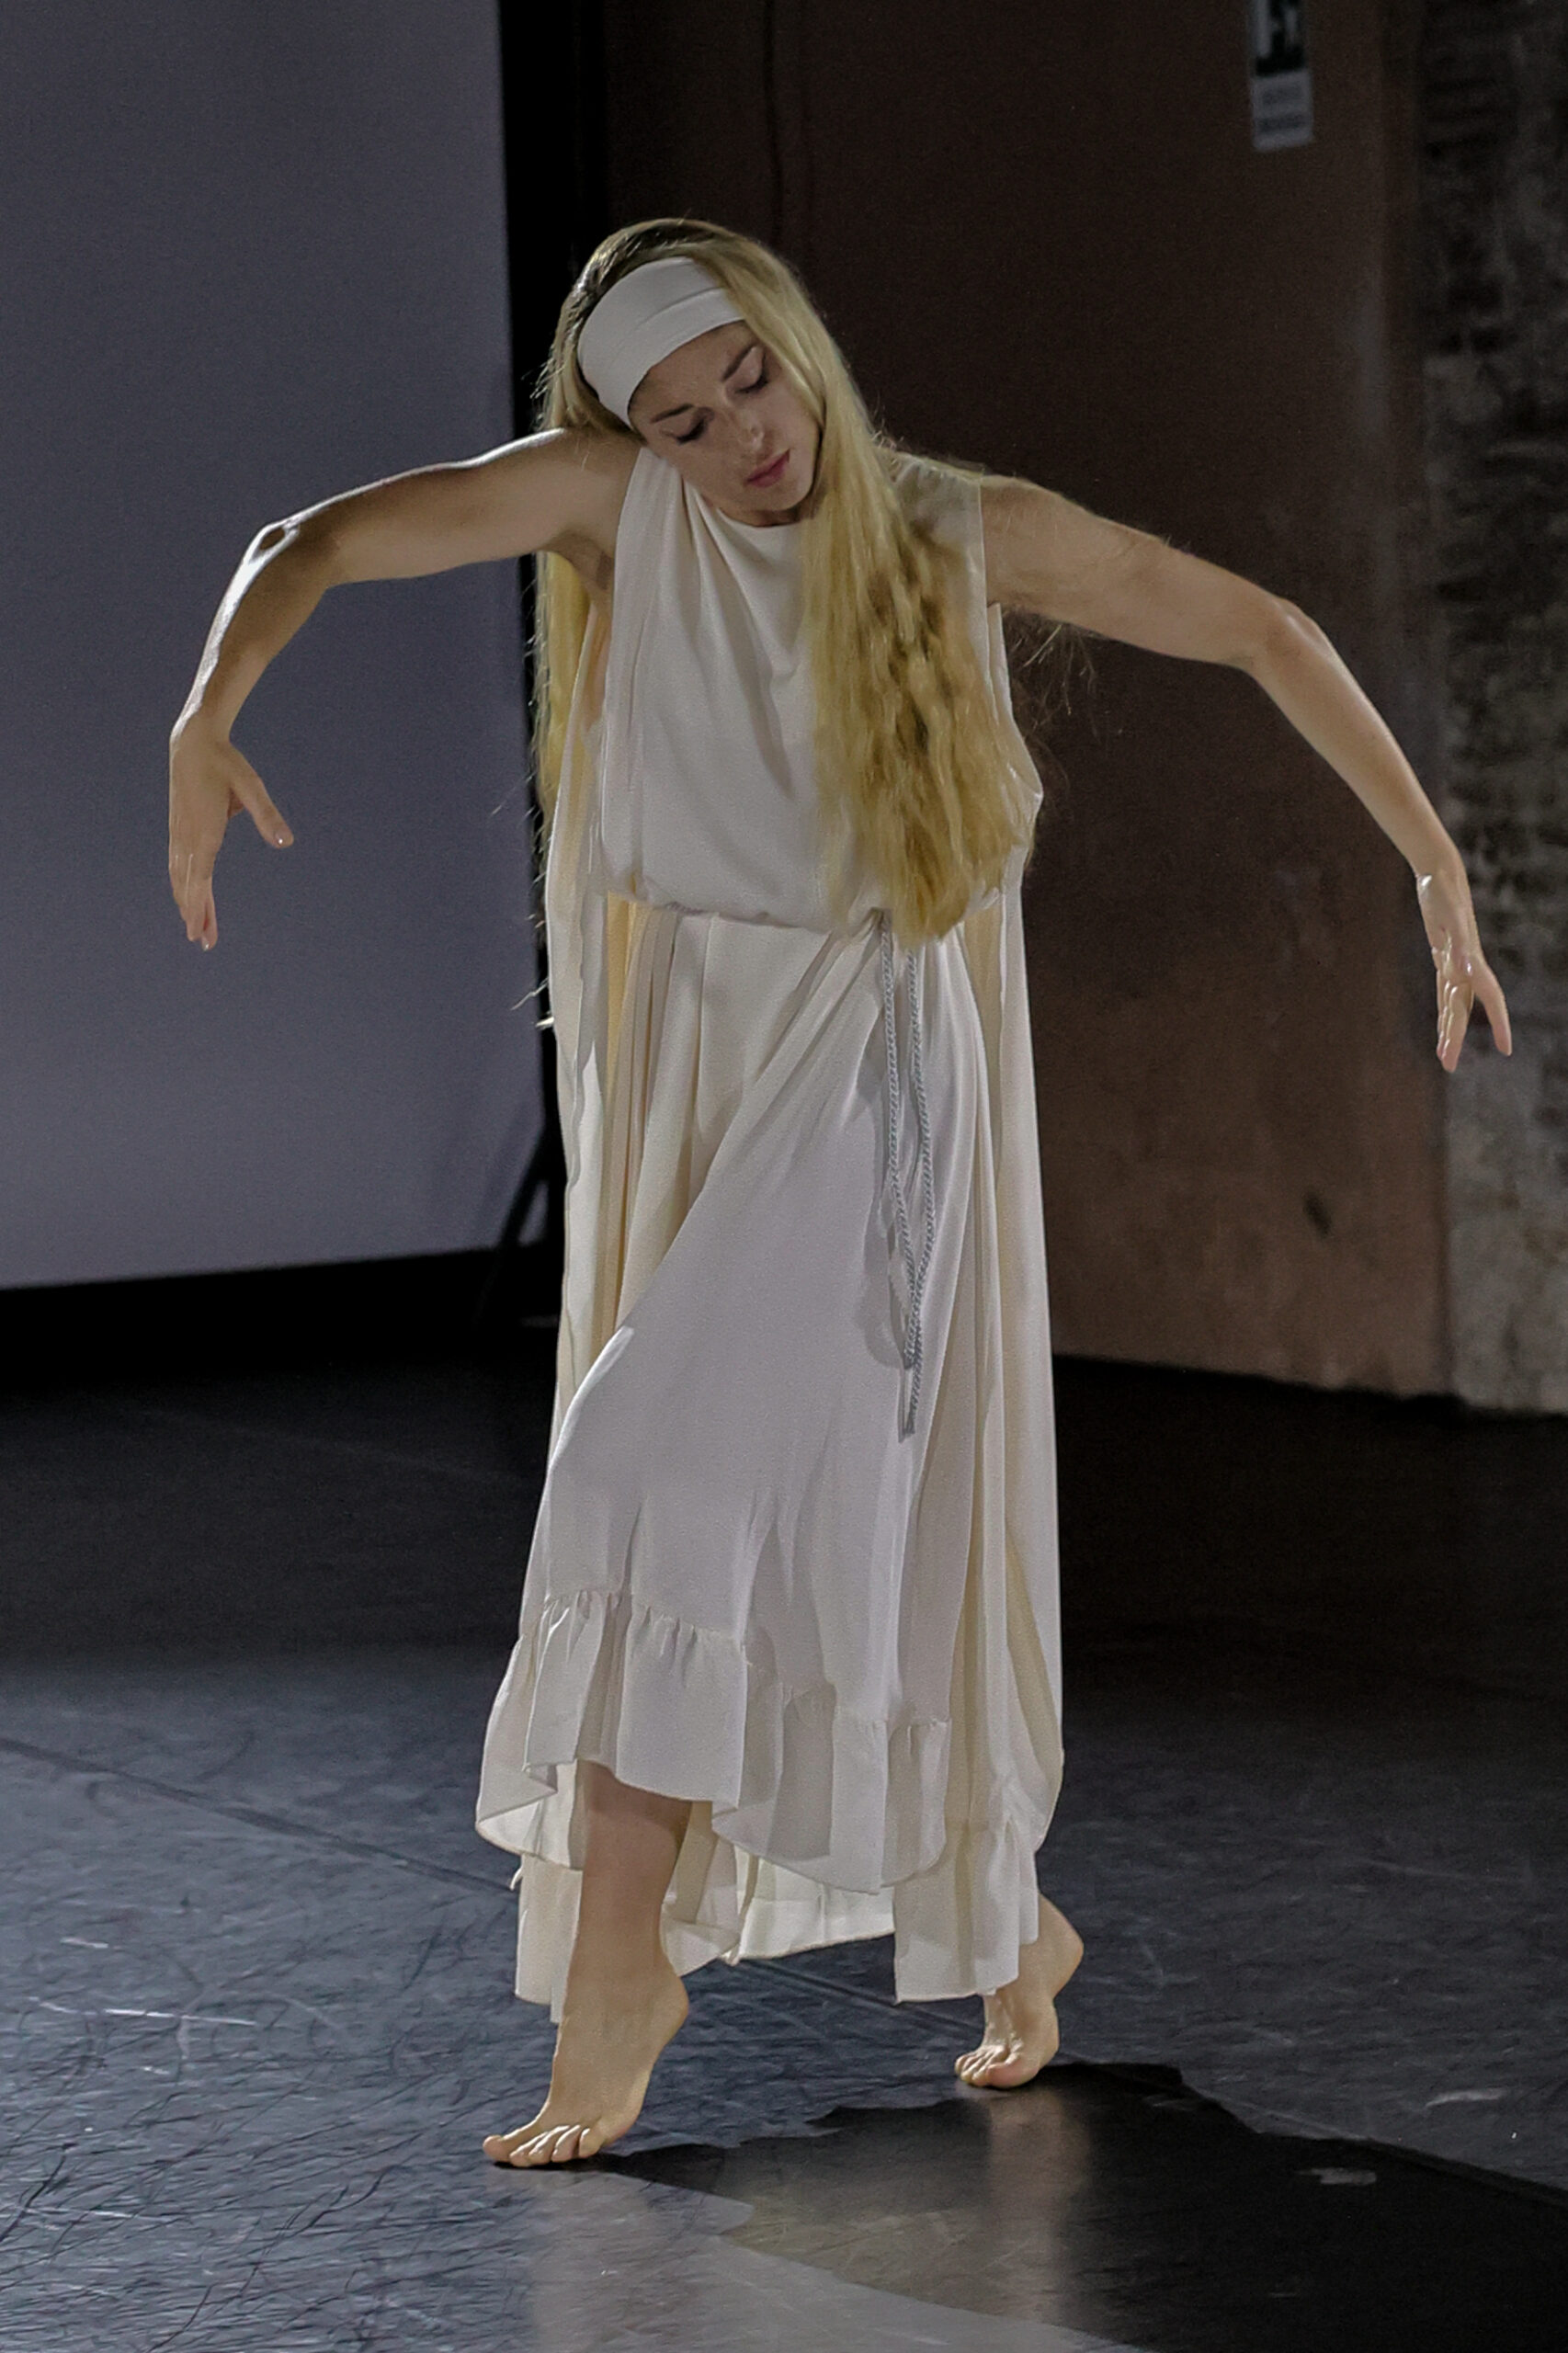 Erica Modotti durante l’esecuzione dell’assolo “Giuditta e Oloferne” film di Baldassarre Negroni (1928), coreografia Jia Ruskaja ricostruita da Chiara Zoppolato, costumi di Simone Martinelli.